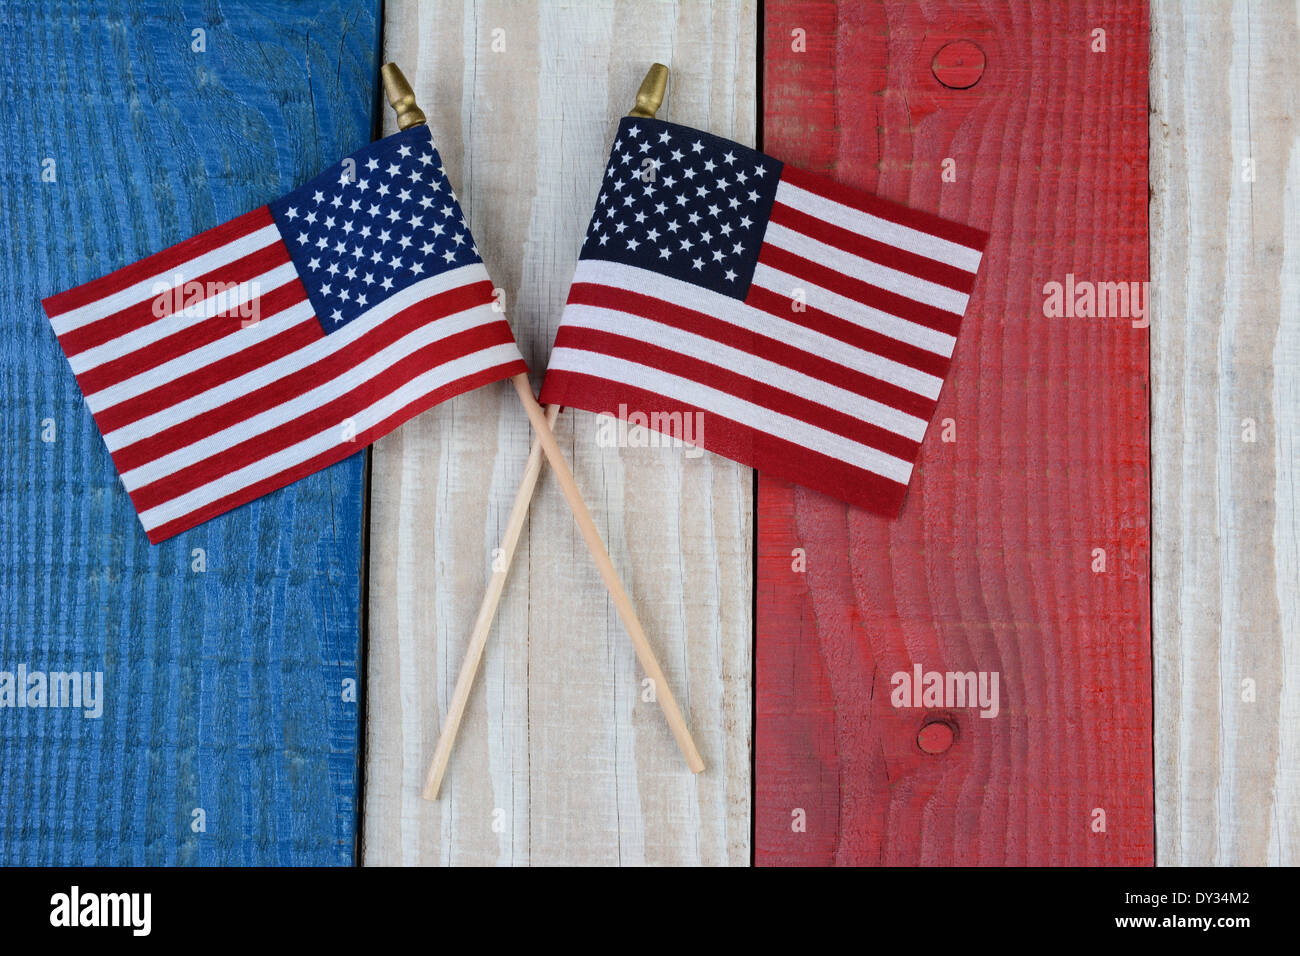 Zwei amerikanische Flaggen auf ein rot-weiß-blau lackierten Holzoberfläche. Perfekt für Fourth Of July oder Memorial Day Projekte. Stockfoto